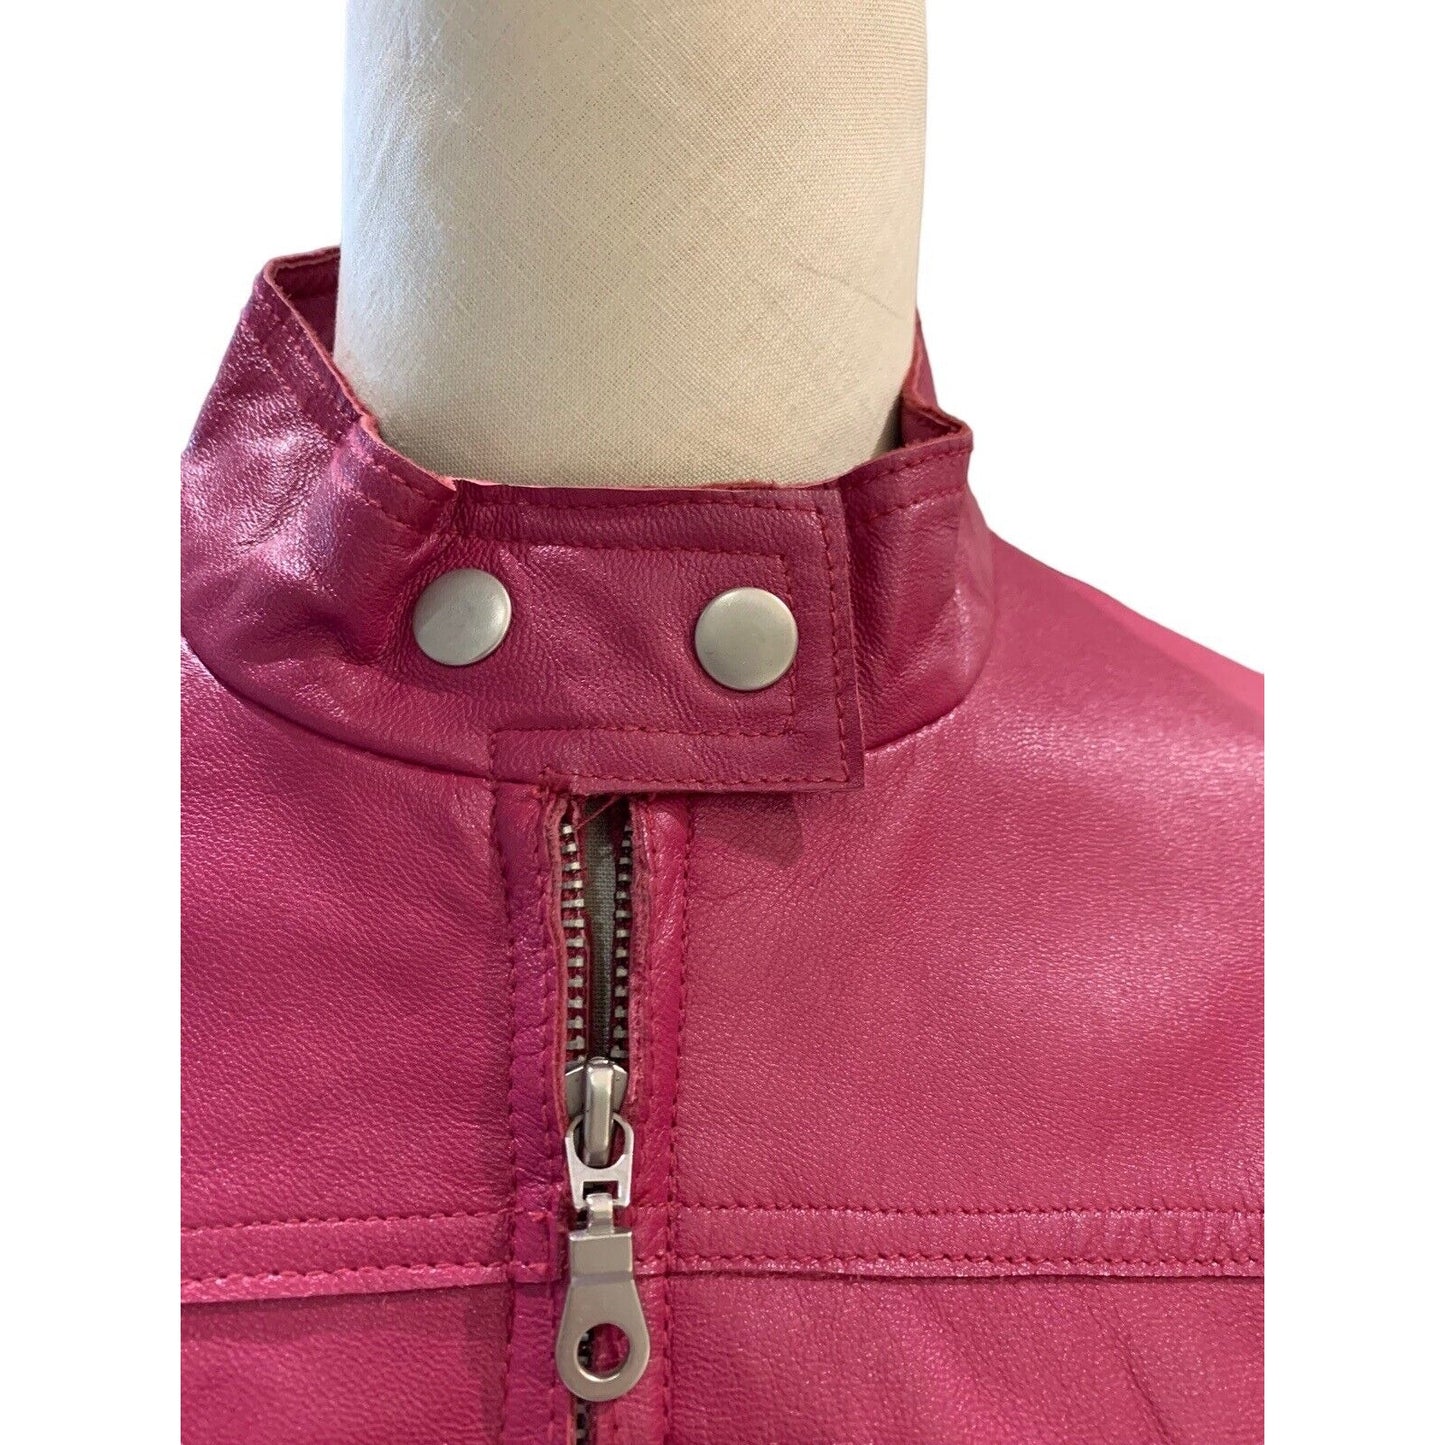 Closeup Of Collar And Zipper